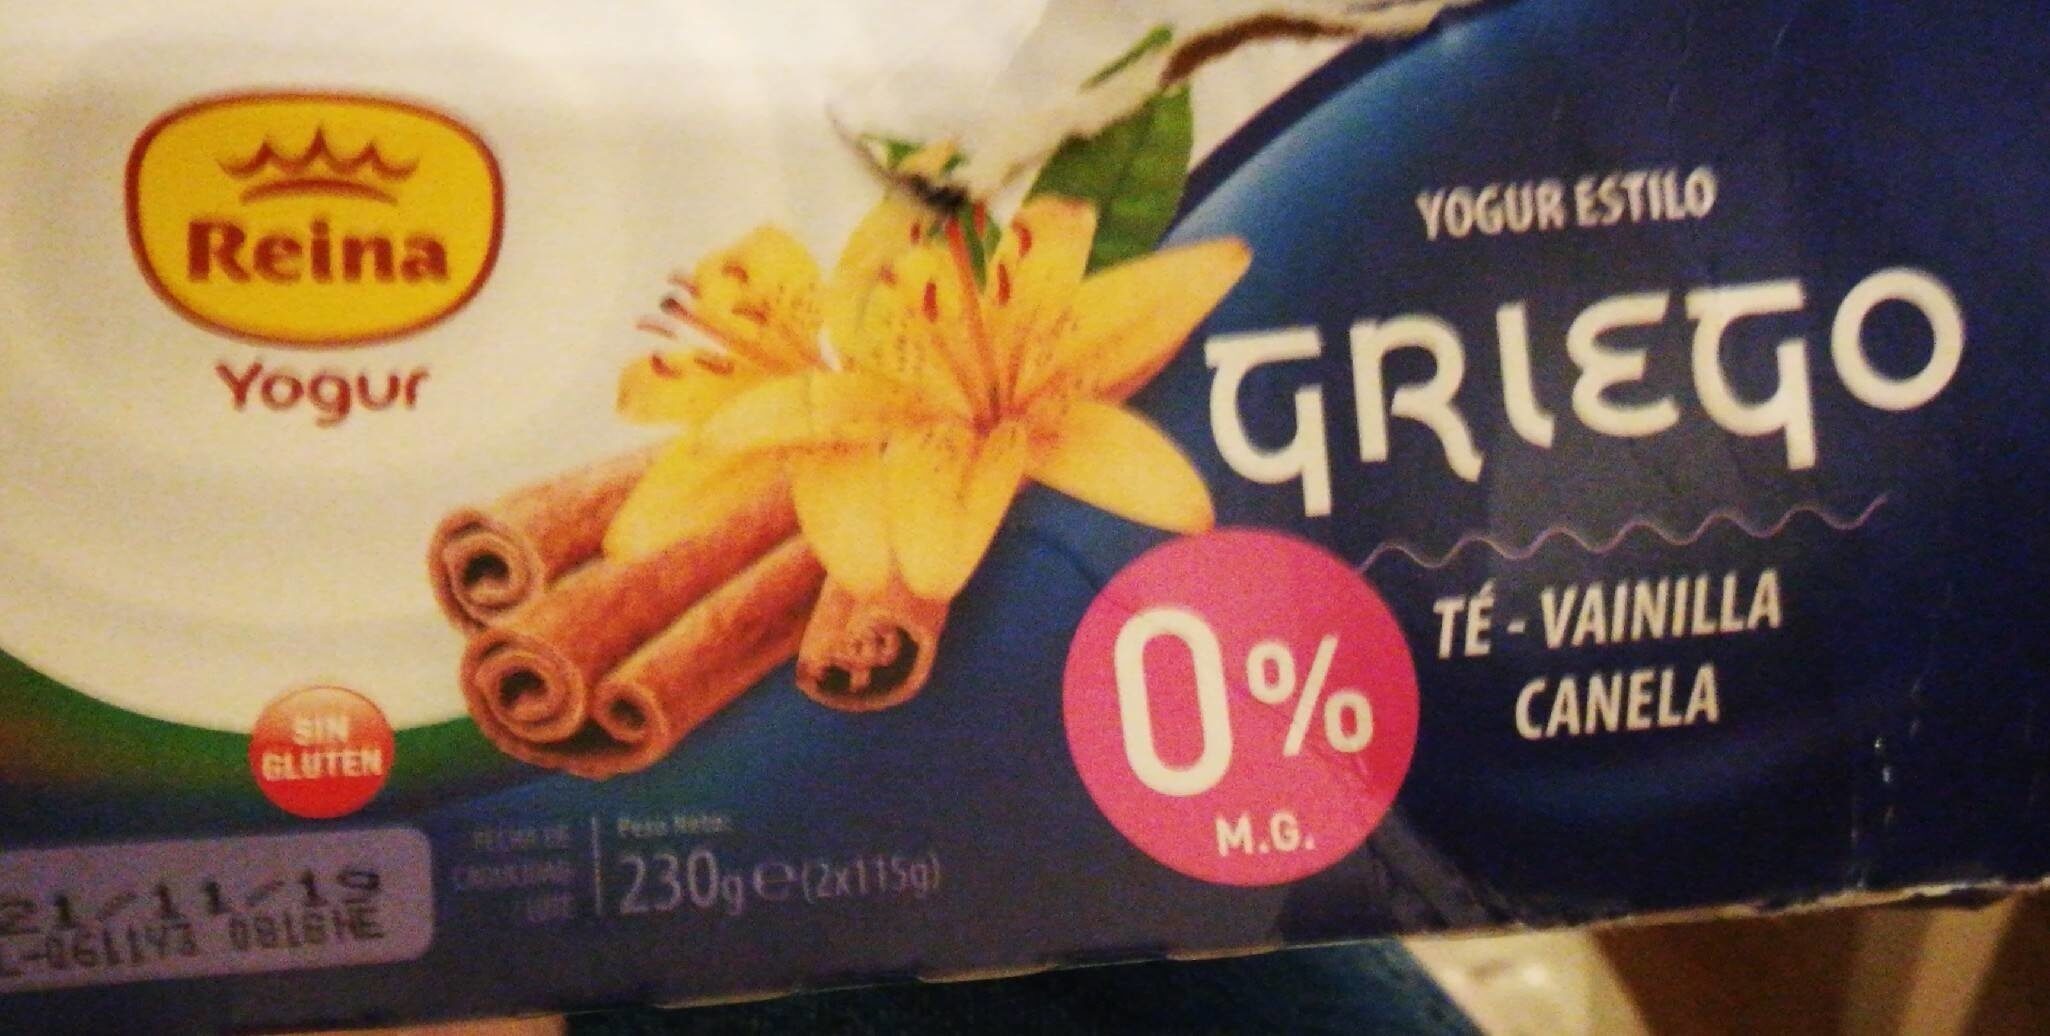 Yogur estilo griego - Té vainilla canela - Product - es